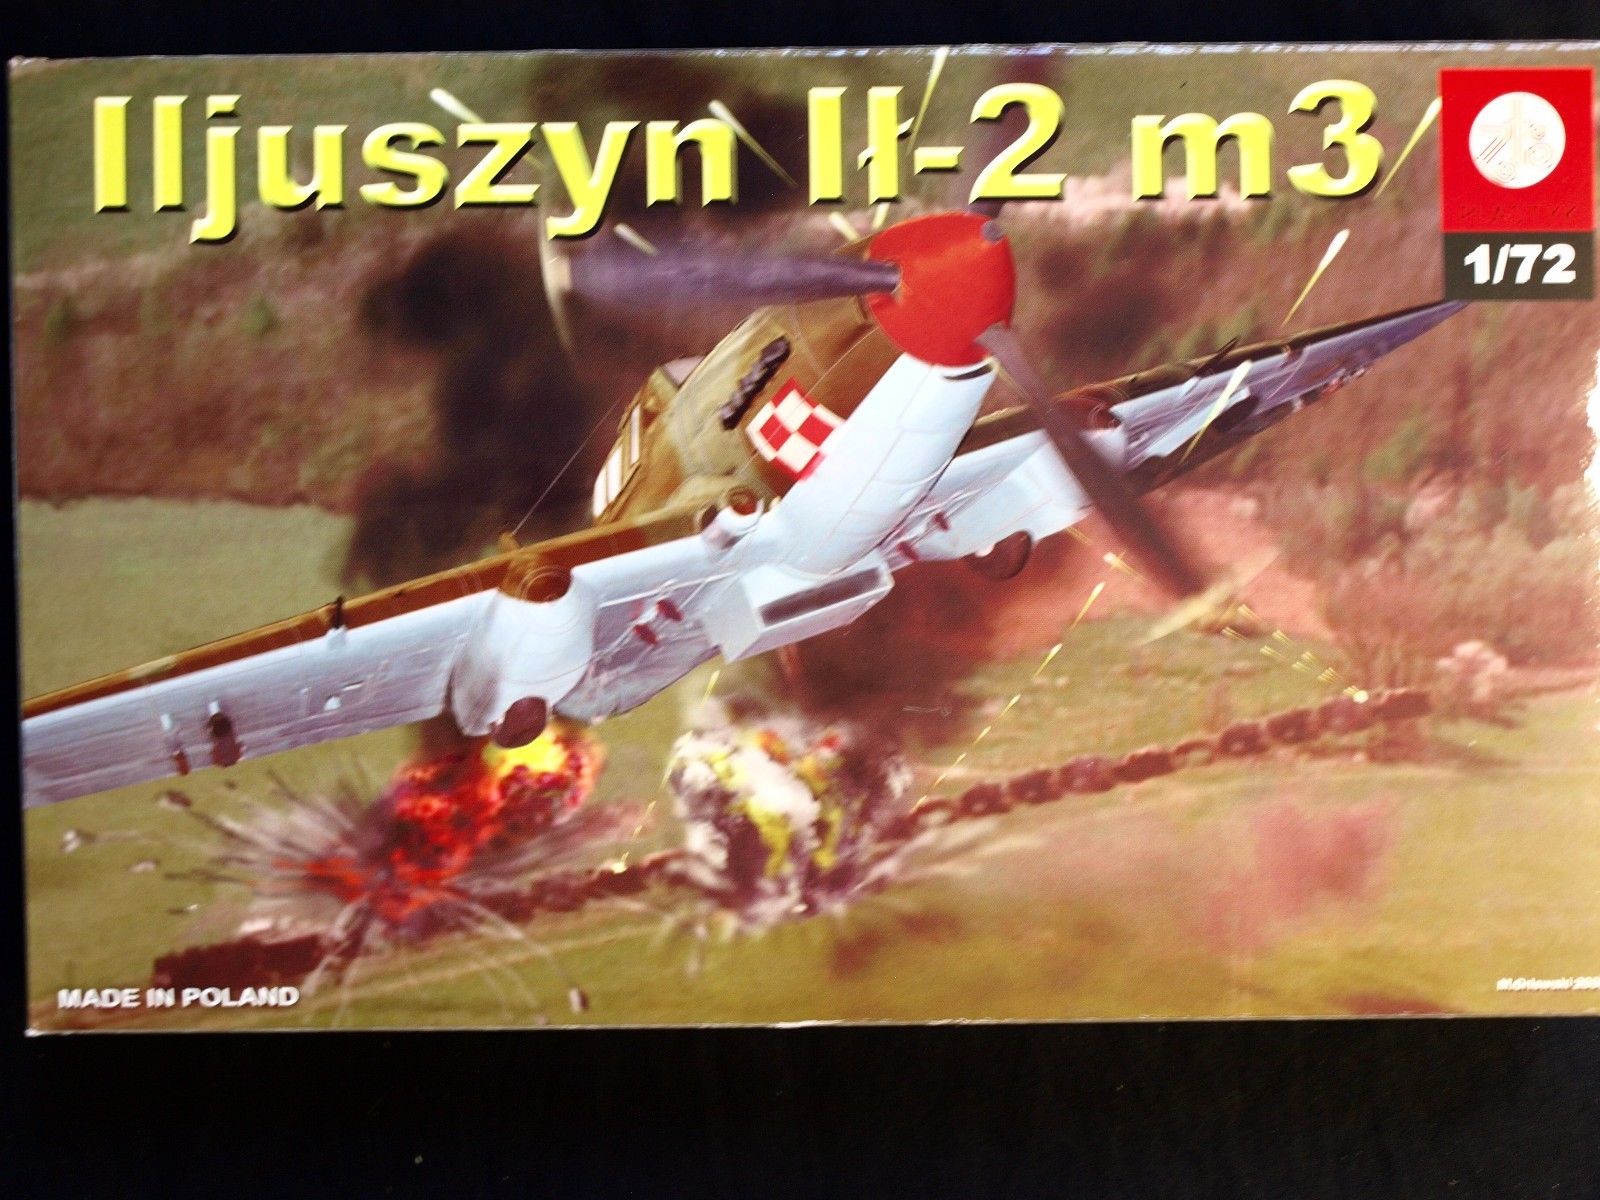 Iljuszyn Ił-2 m3